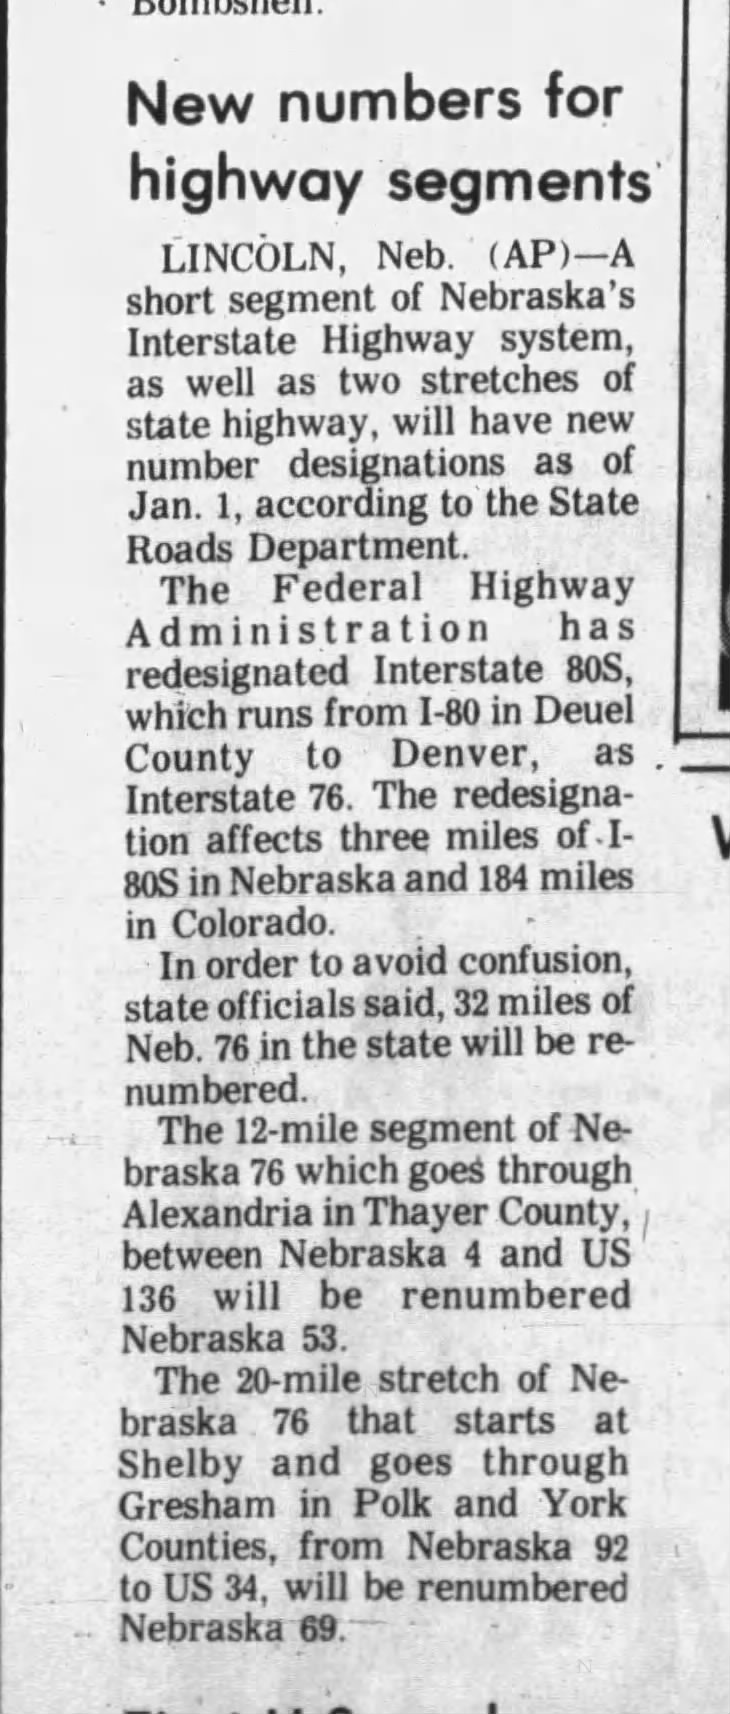 Nebraska changes, November 18, 1974